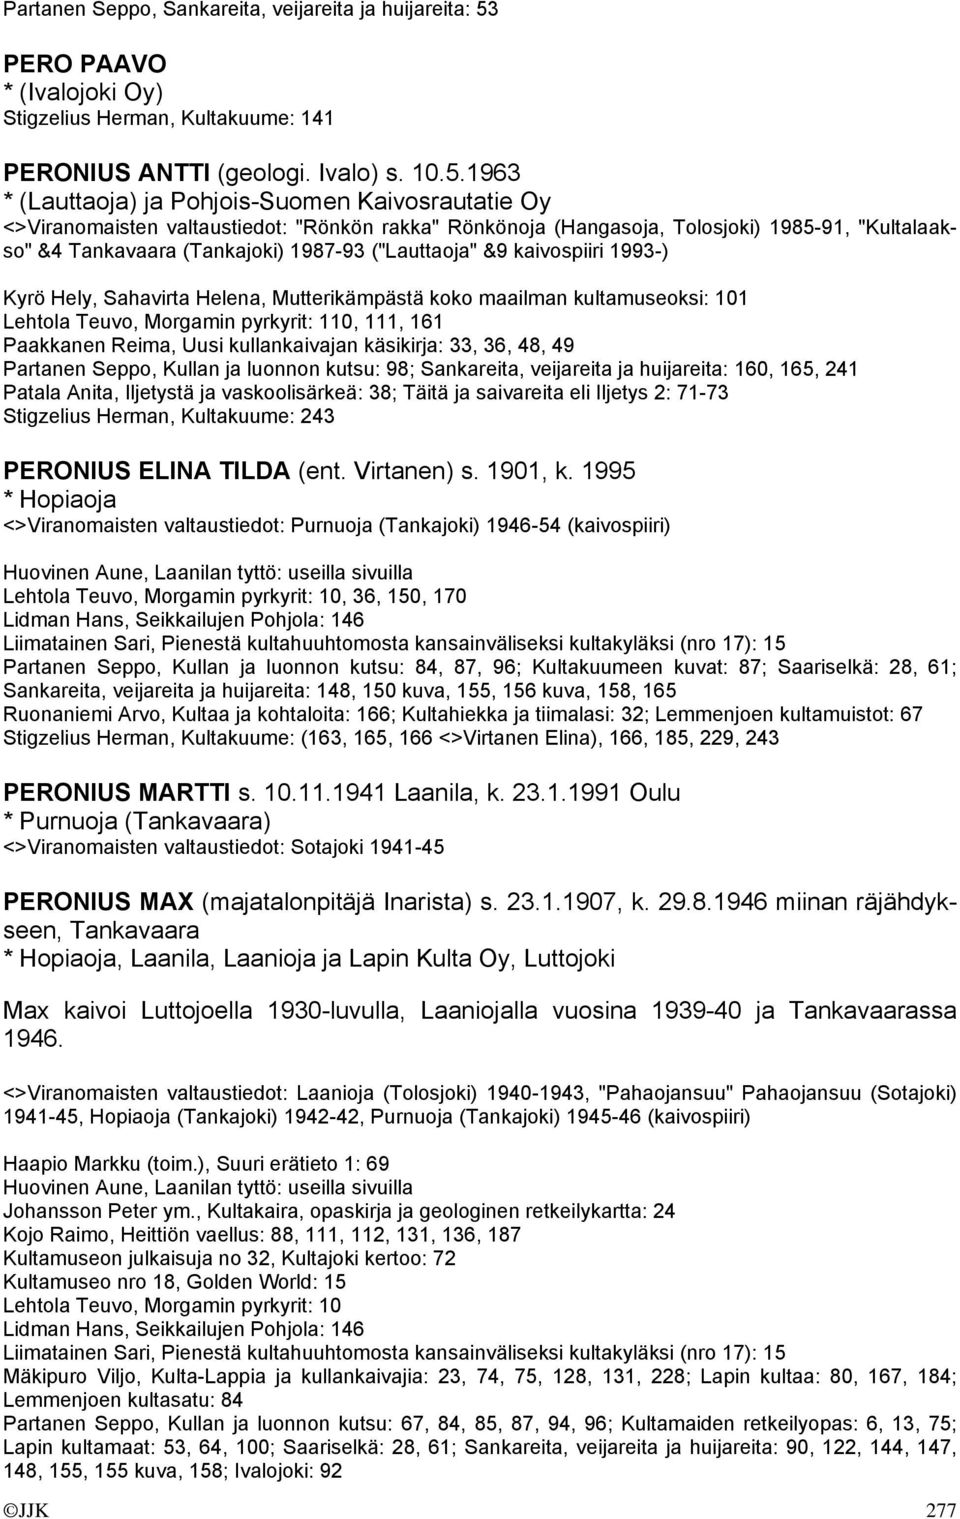 1963 * (Lauttaoja) ja Pohjois-Suomen Kaivosrautatie Oy <>Viranomaisten valtaustiedot: "Rönkön rakka" Rönkönoja (Hangasoja, Tolosjoki) 1985-91, "Kultalaakso" &4 Tankavaara (Tankajoki) 1987-93